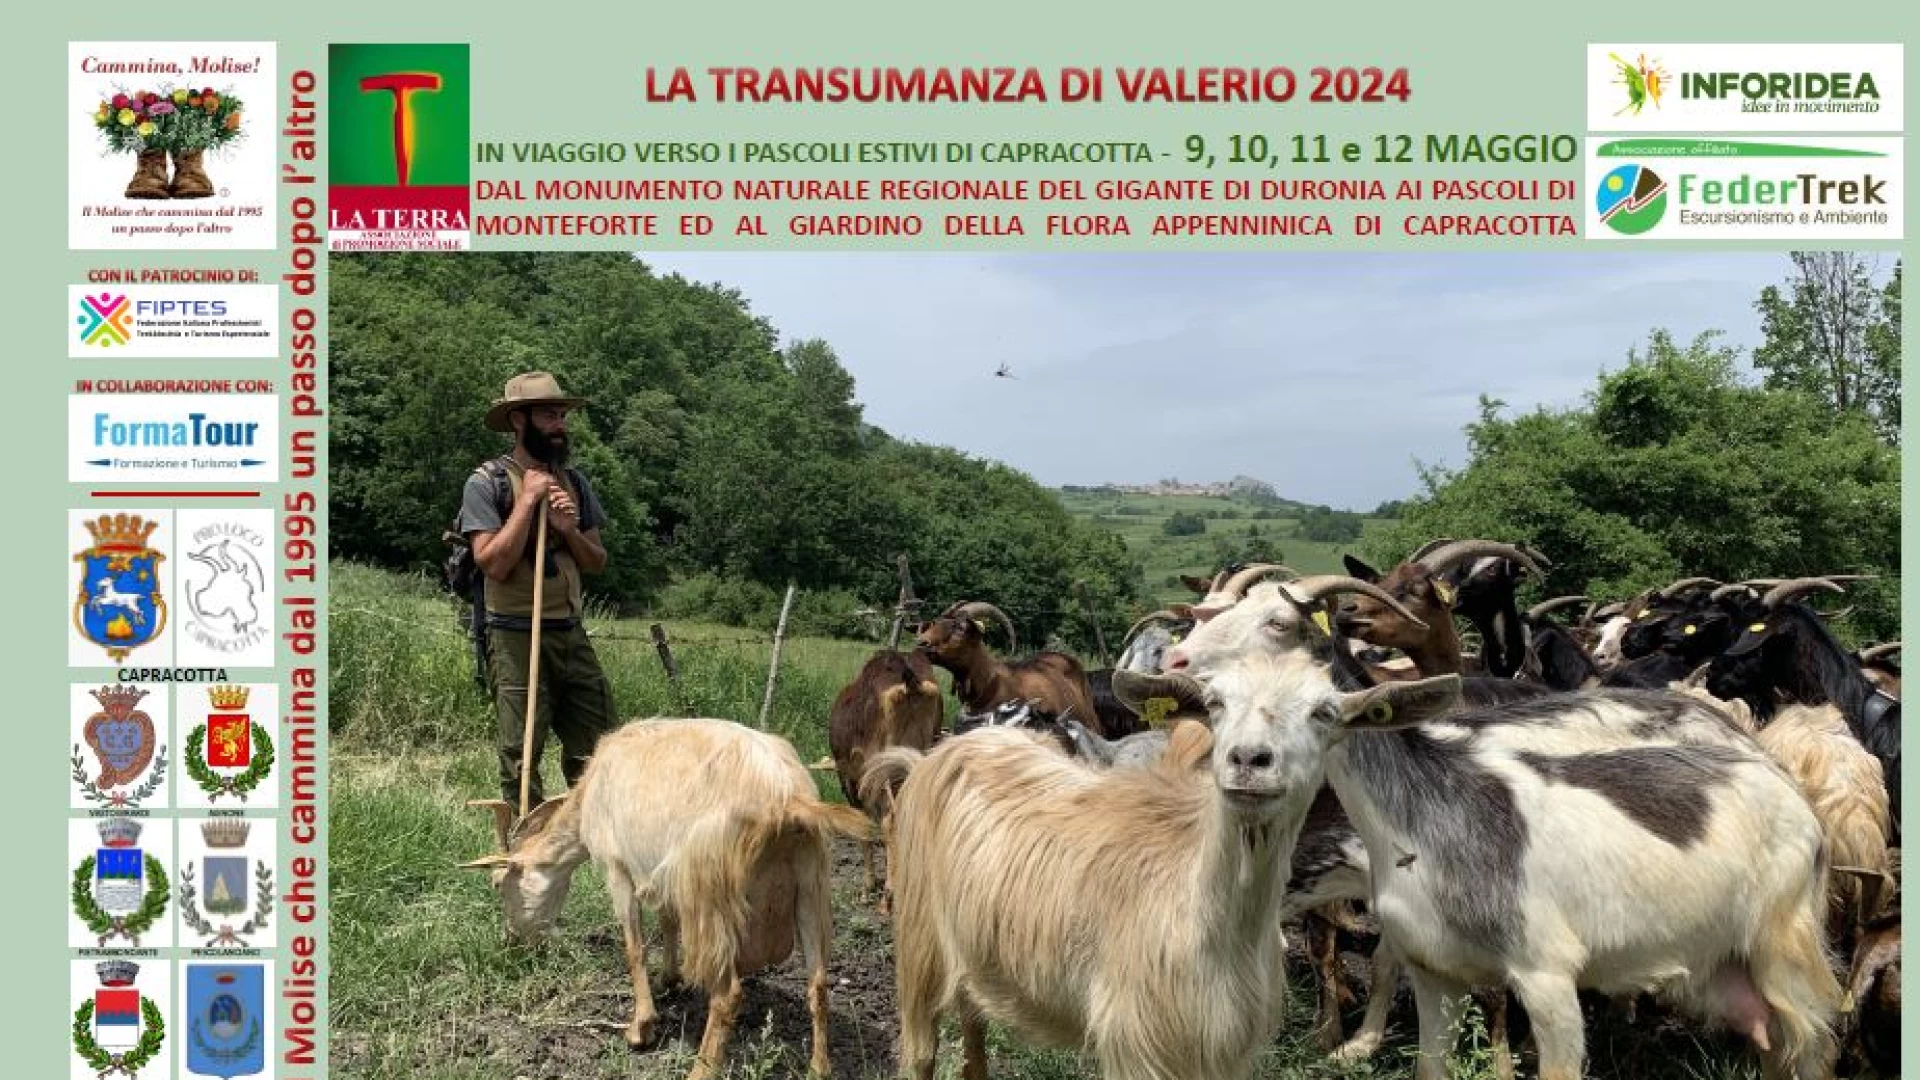 Transumando con le capre di Valerio, al via l’edizione 2024.